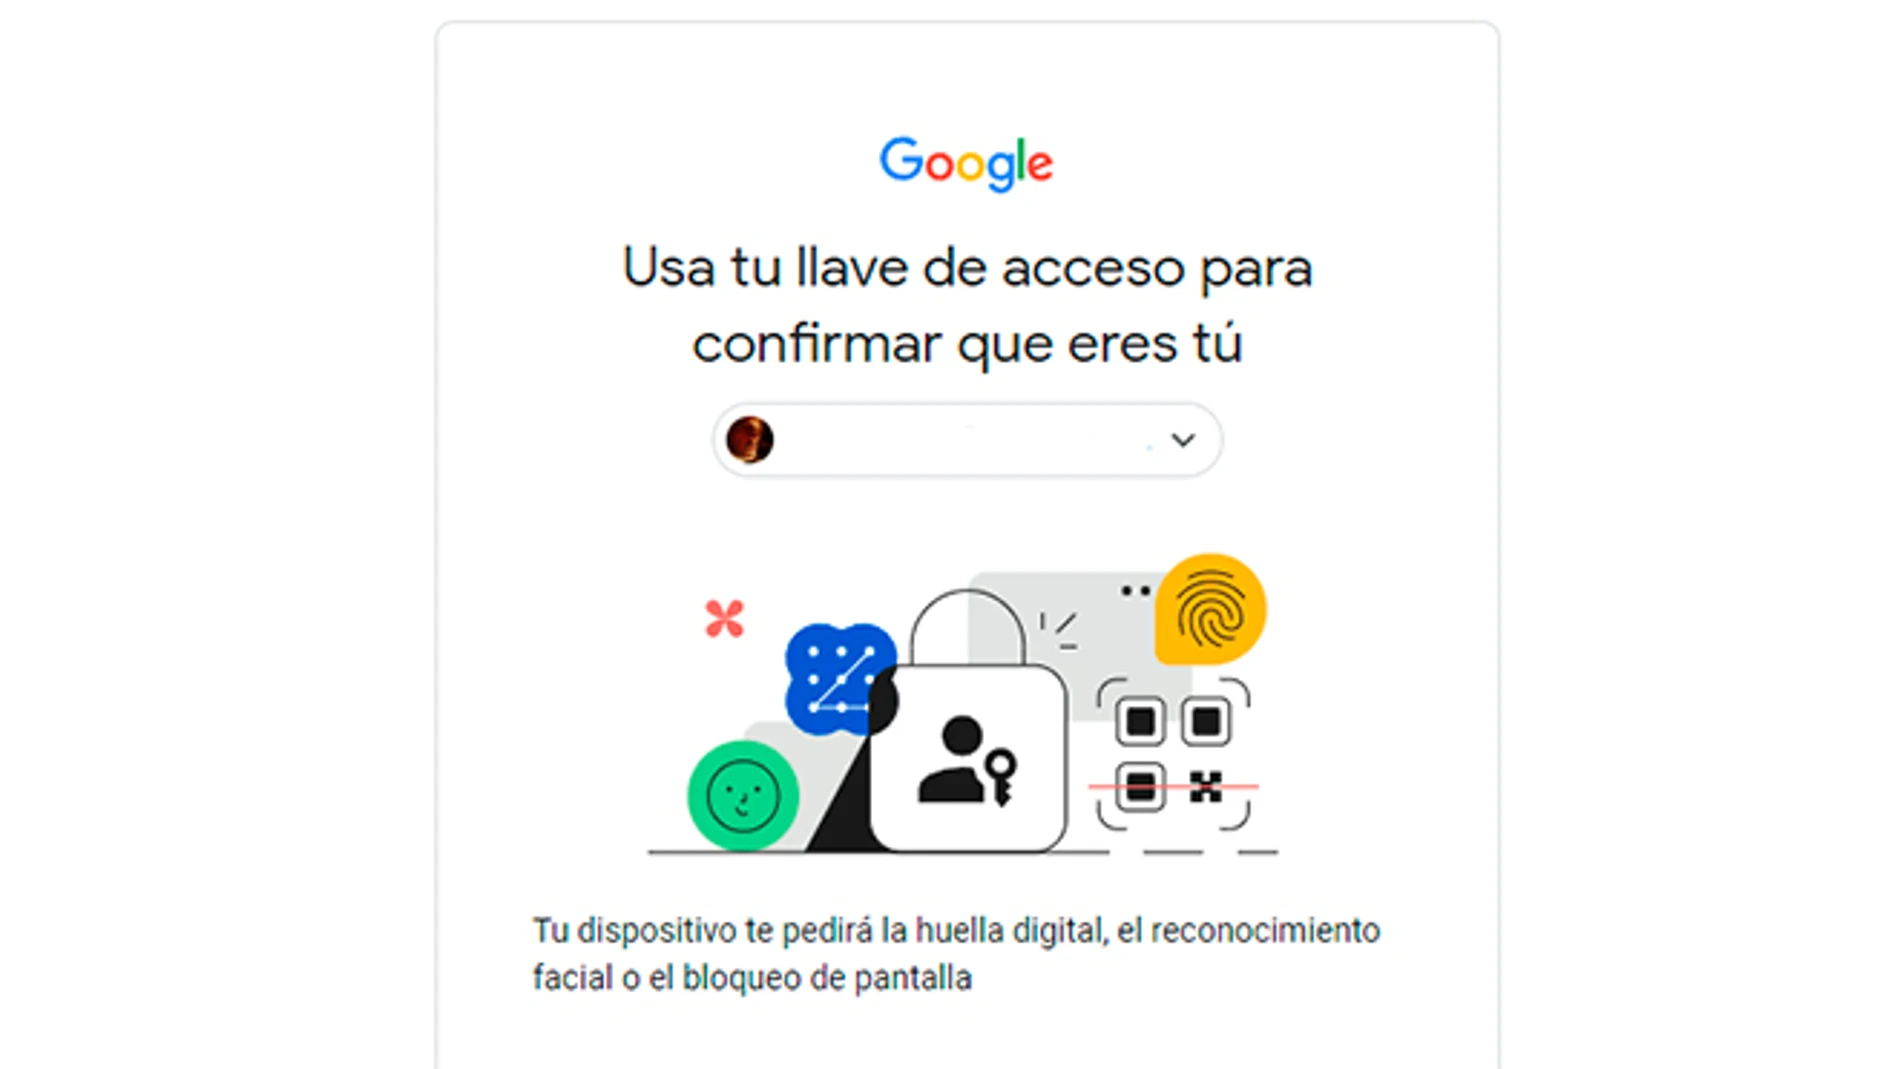 Google ya permite usar llaves de paso en lugar de contraseñas para acceder a la cuenta.